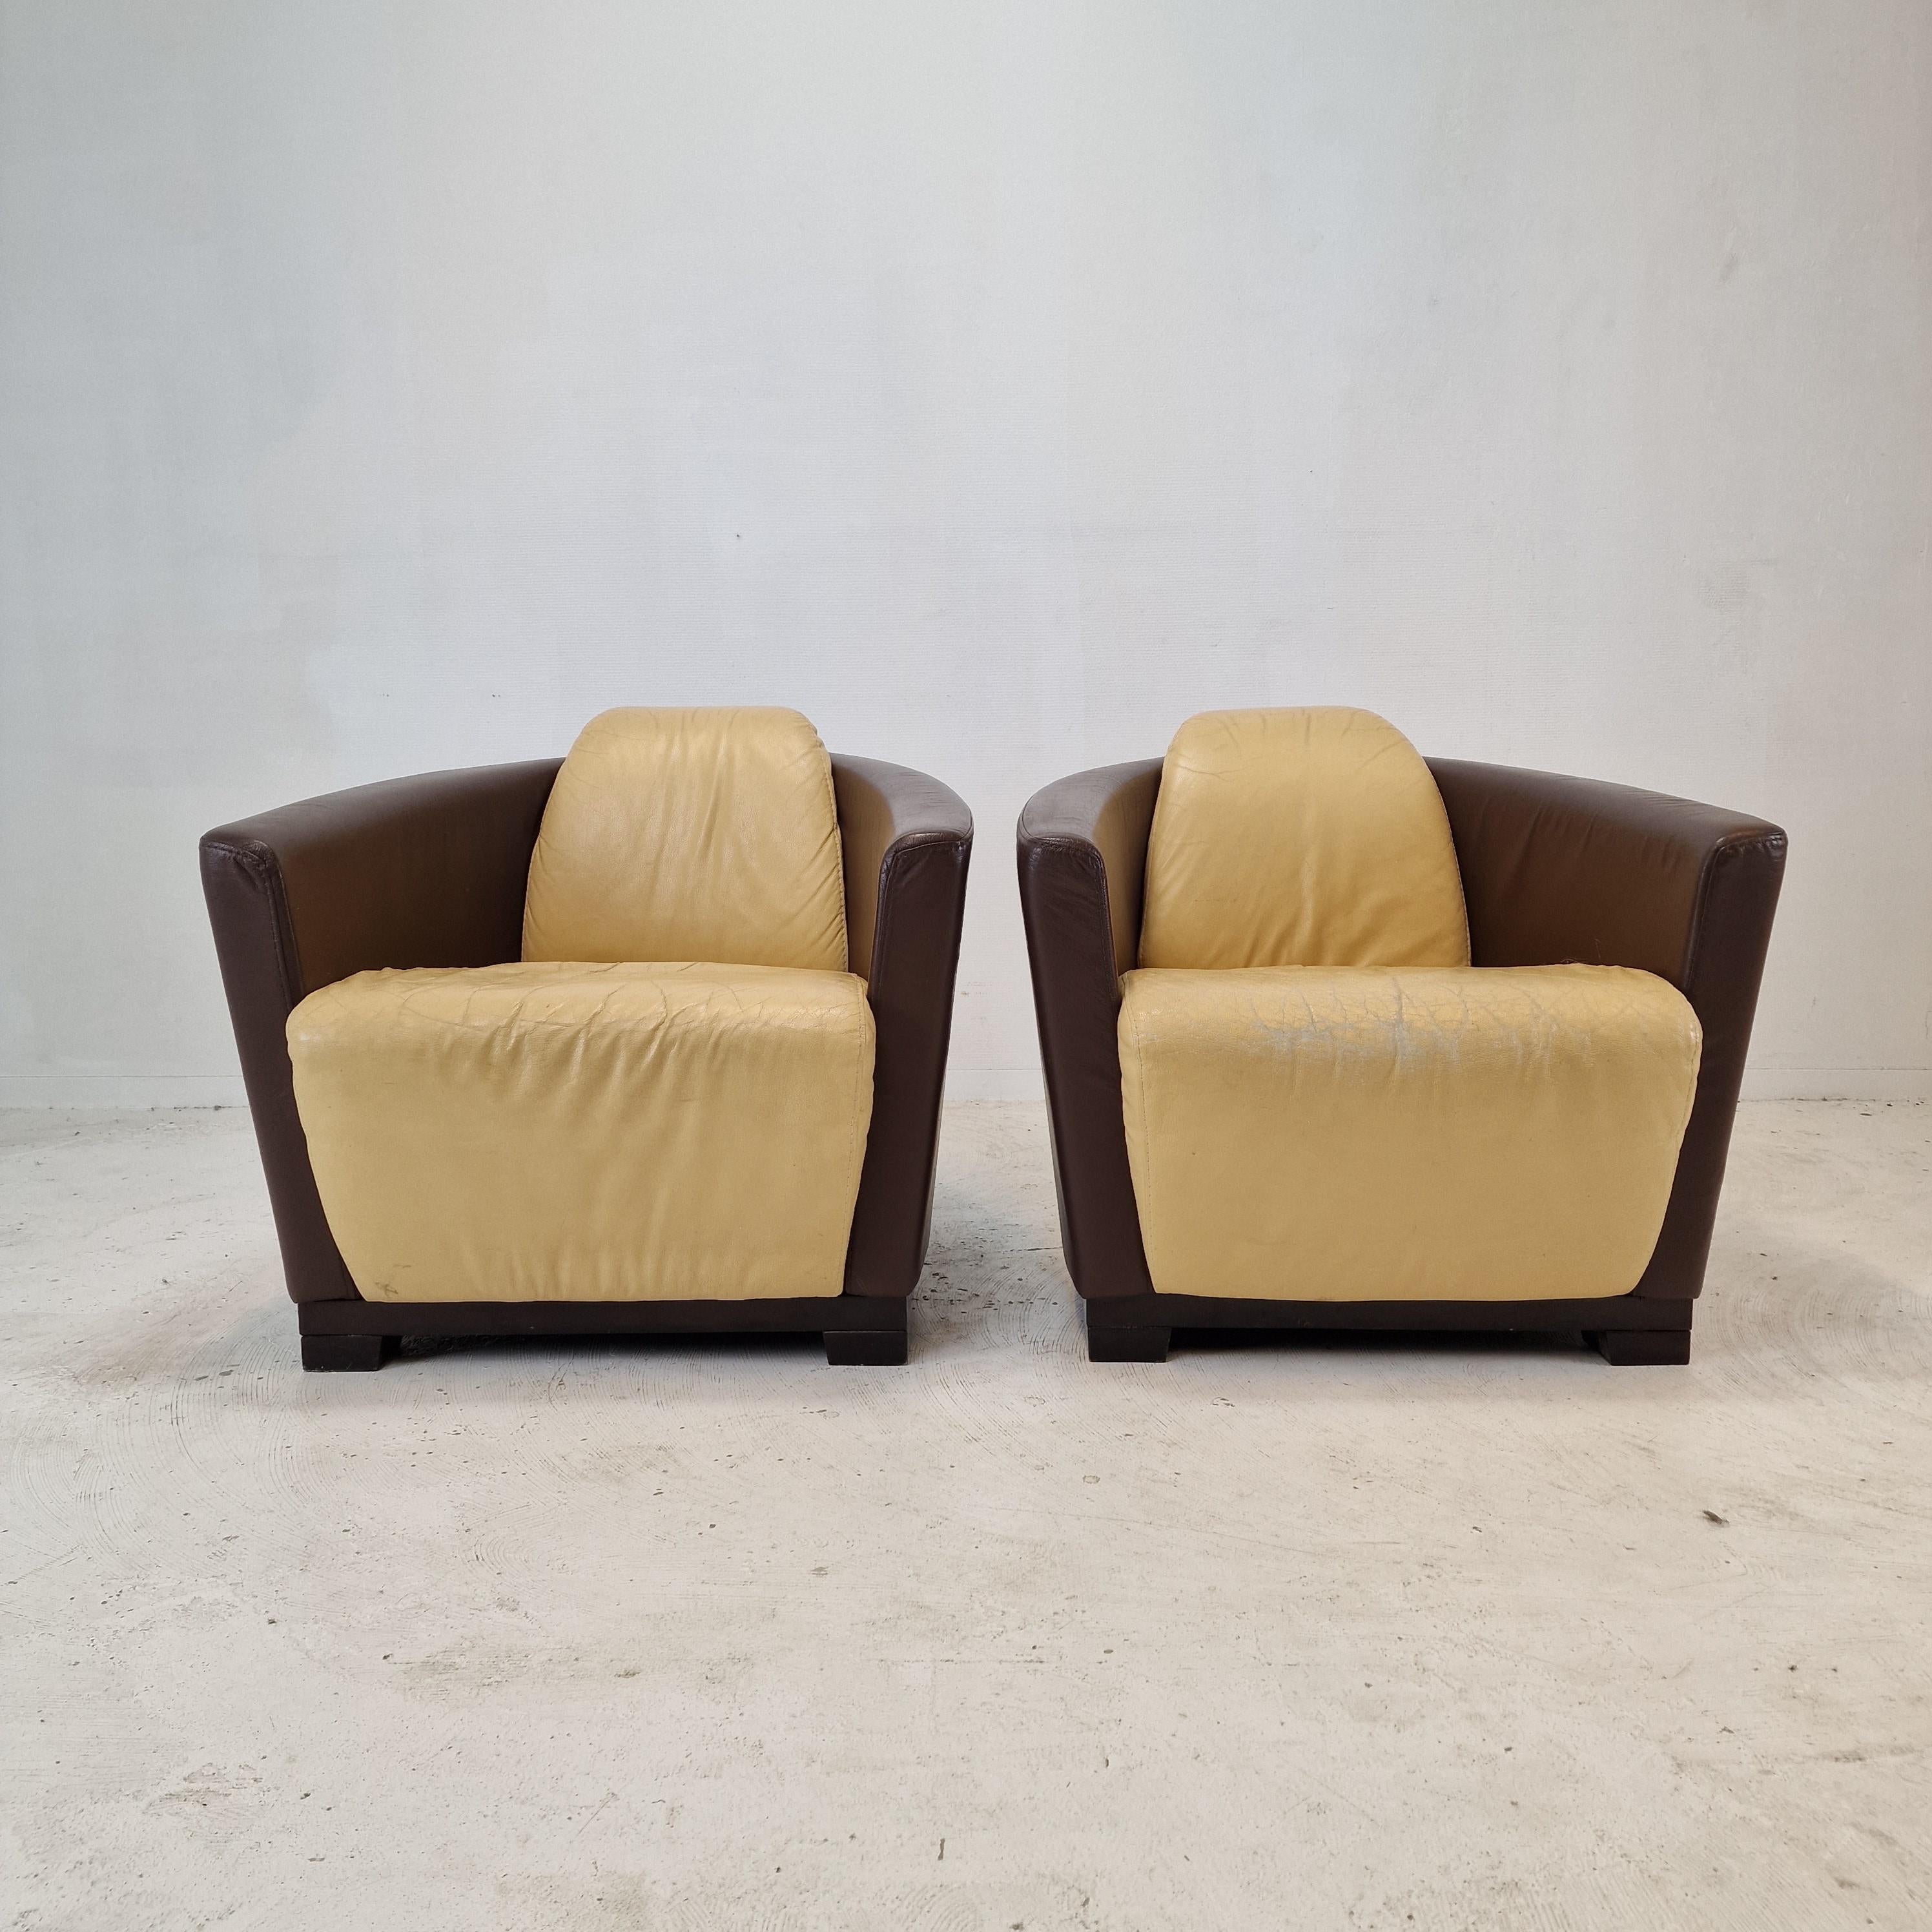 Très bel ensemble de 2 chaises Club ou Lounge, fabriquées par Calia en Italie dans les années 80. 

Réalisé avec un cadre en bois massif et un très beau cuir beige et marron.
Le cuir de haute qualité est en état d'usage et a une belle patine (voir